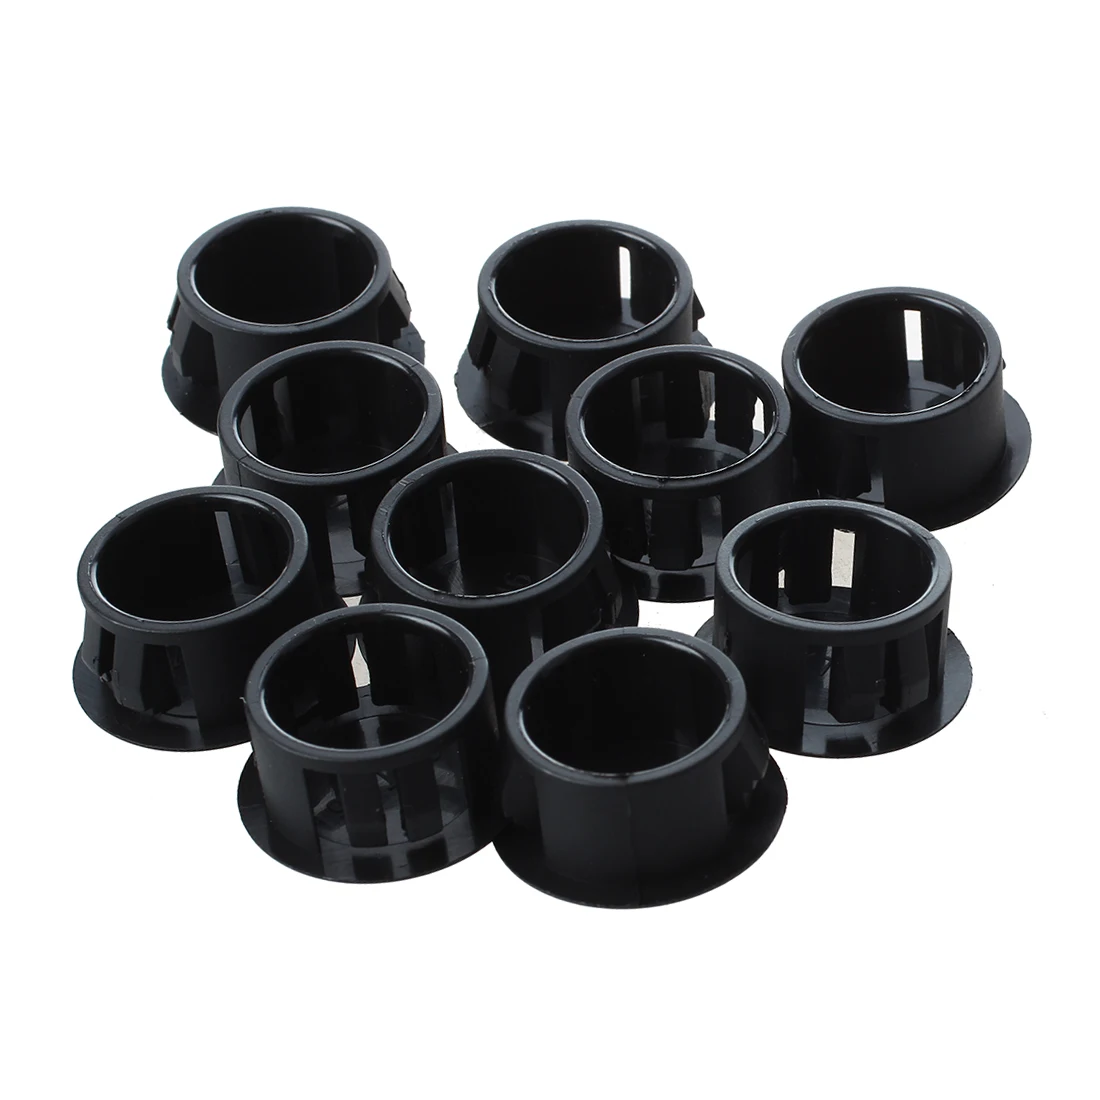 10 шт. черный пластик Шапки отверстие пробки давления Шапки 16 мм x 20 мм x 10 мм